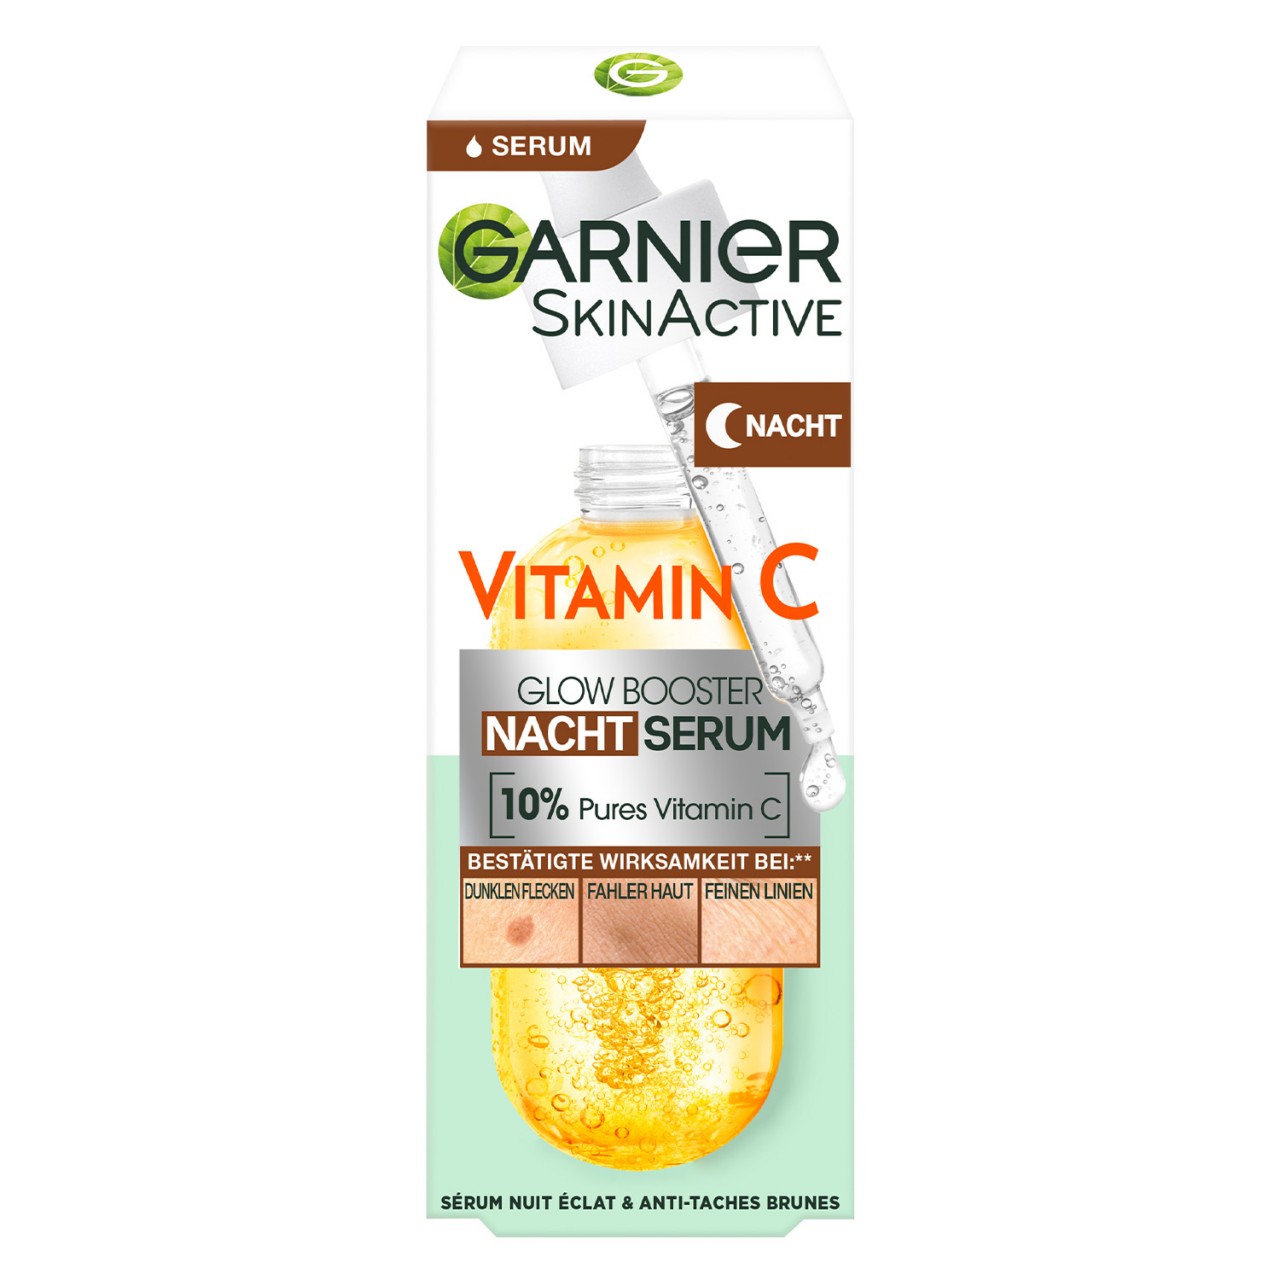 Skinactive Face - Vitamin C Glow Booster Serum Night von GARNIER